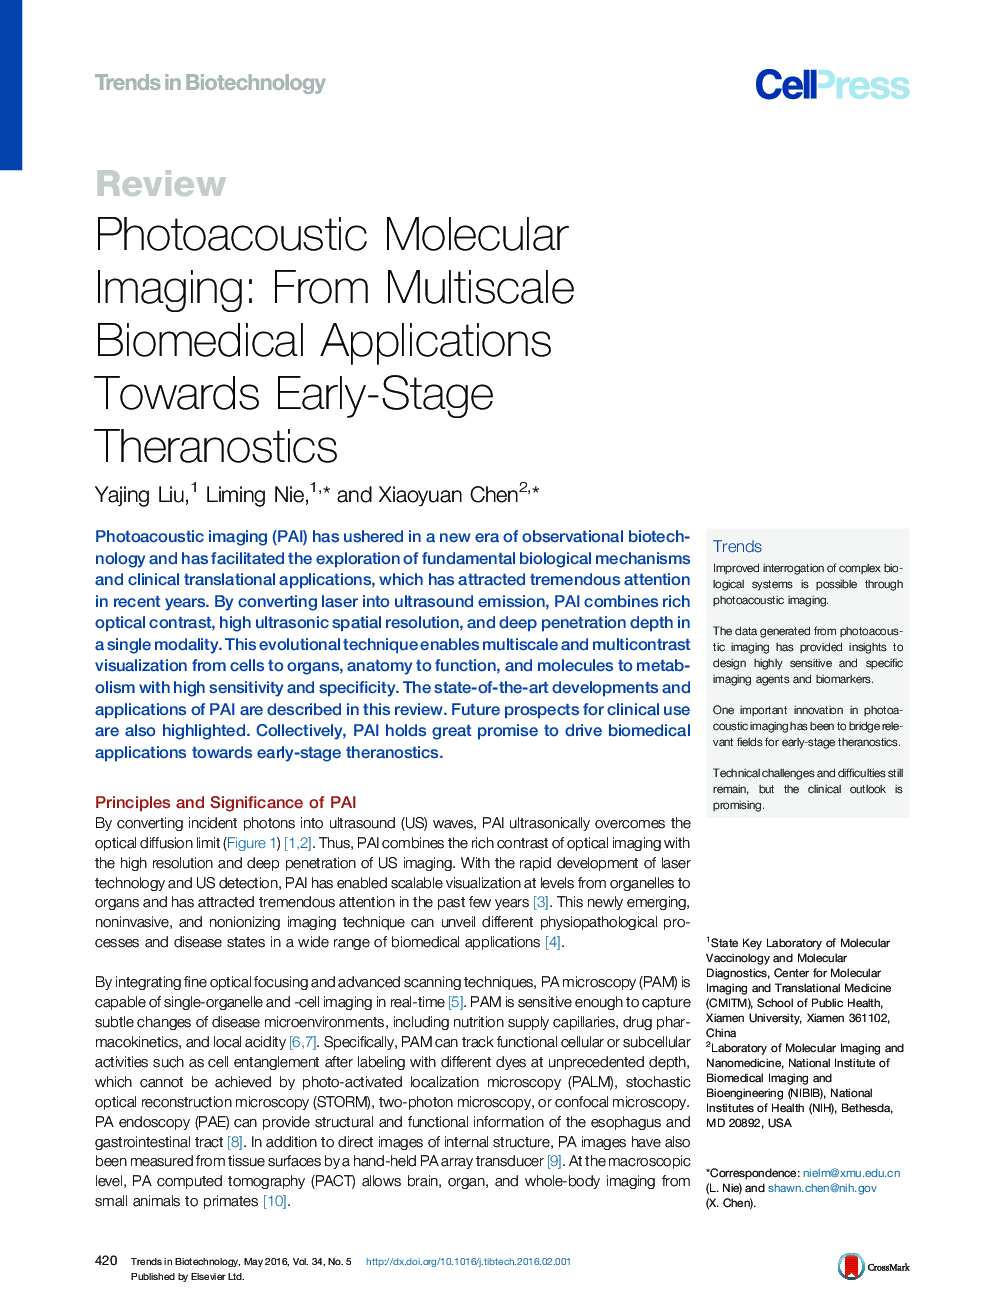 تصویربرداری مولکولی عکسبرداری: از برنامه های چندرسانه ای پزشکی کاربردی در زمینه ترانزیستی در مراحل اولیه 